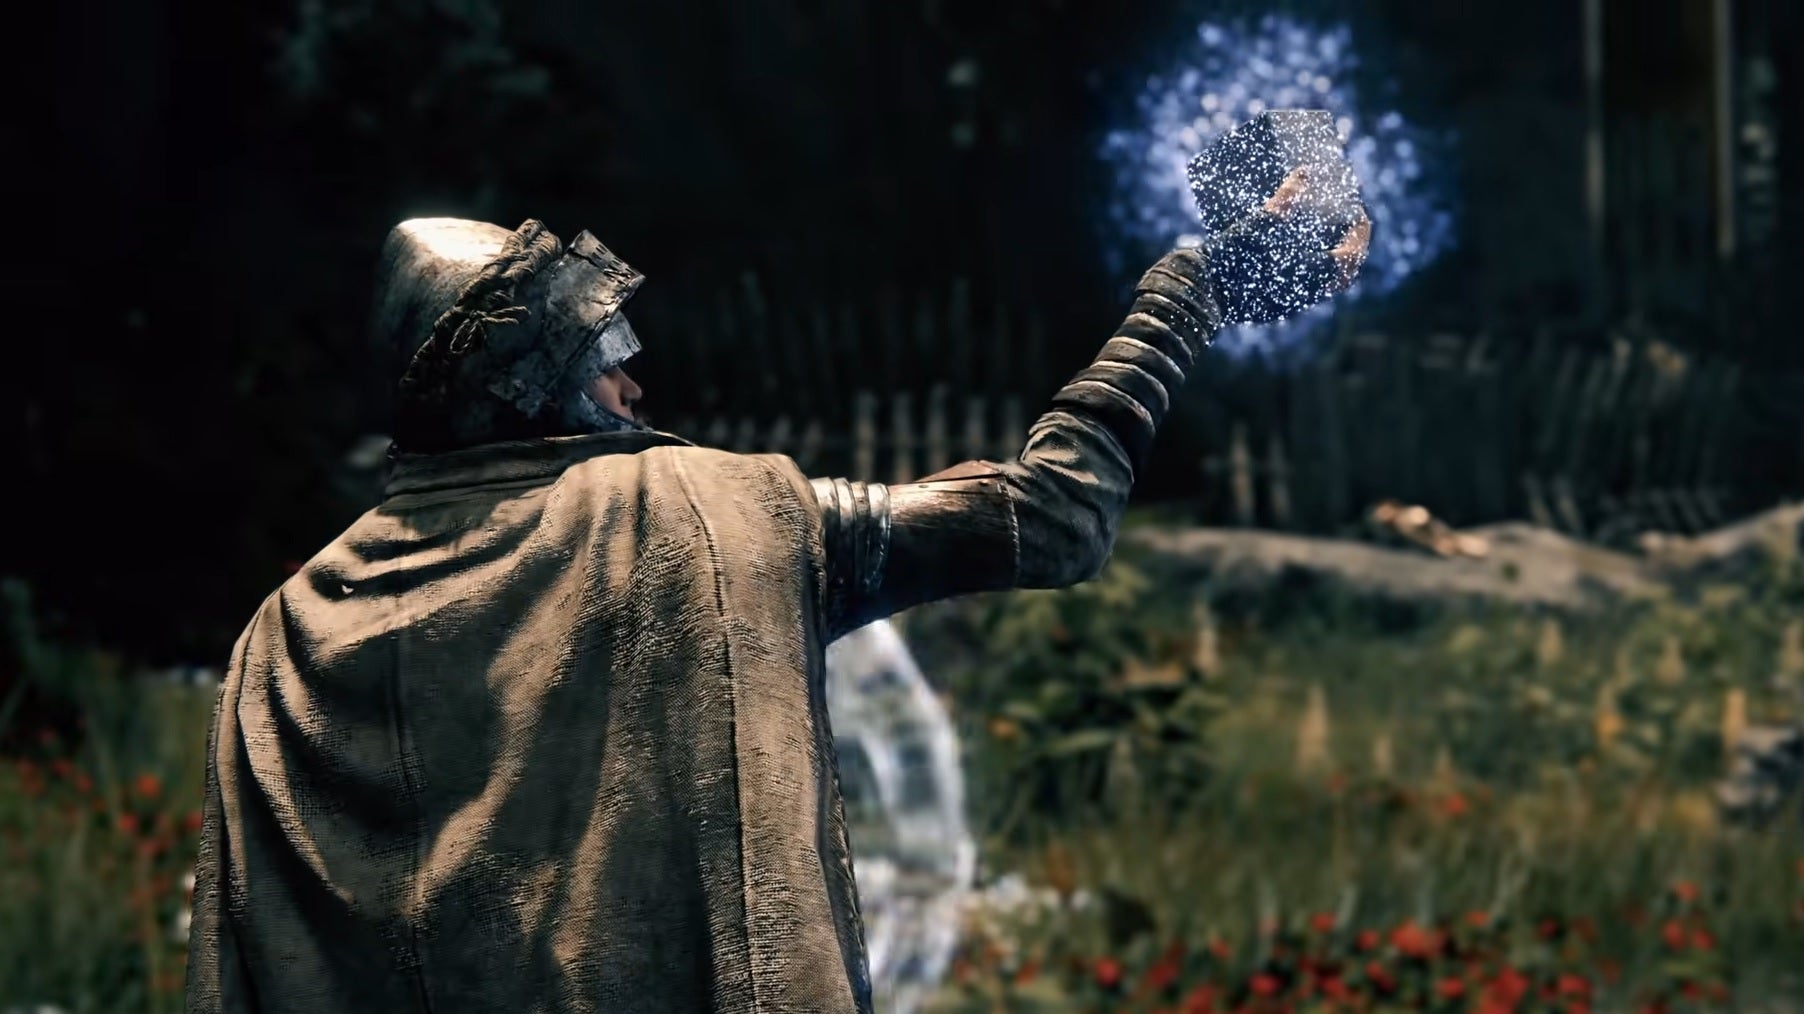 Elden Ring: Shadow Of The Erdtree Gameplay Trailer Reveals